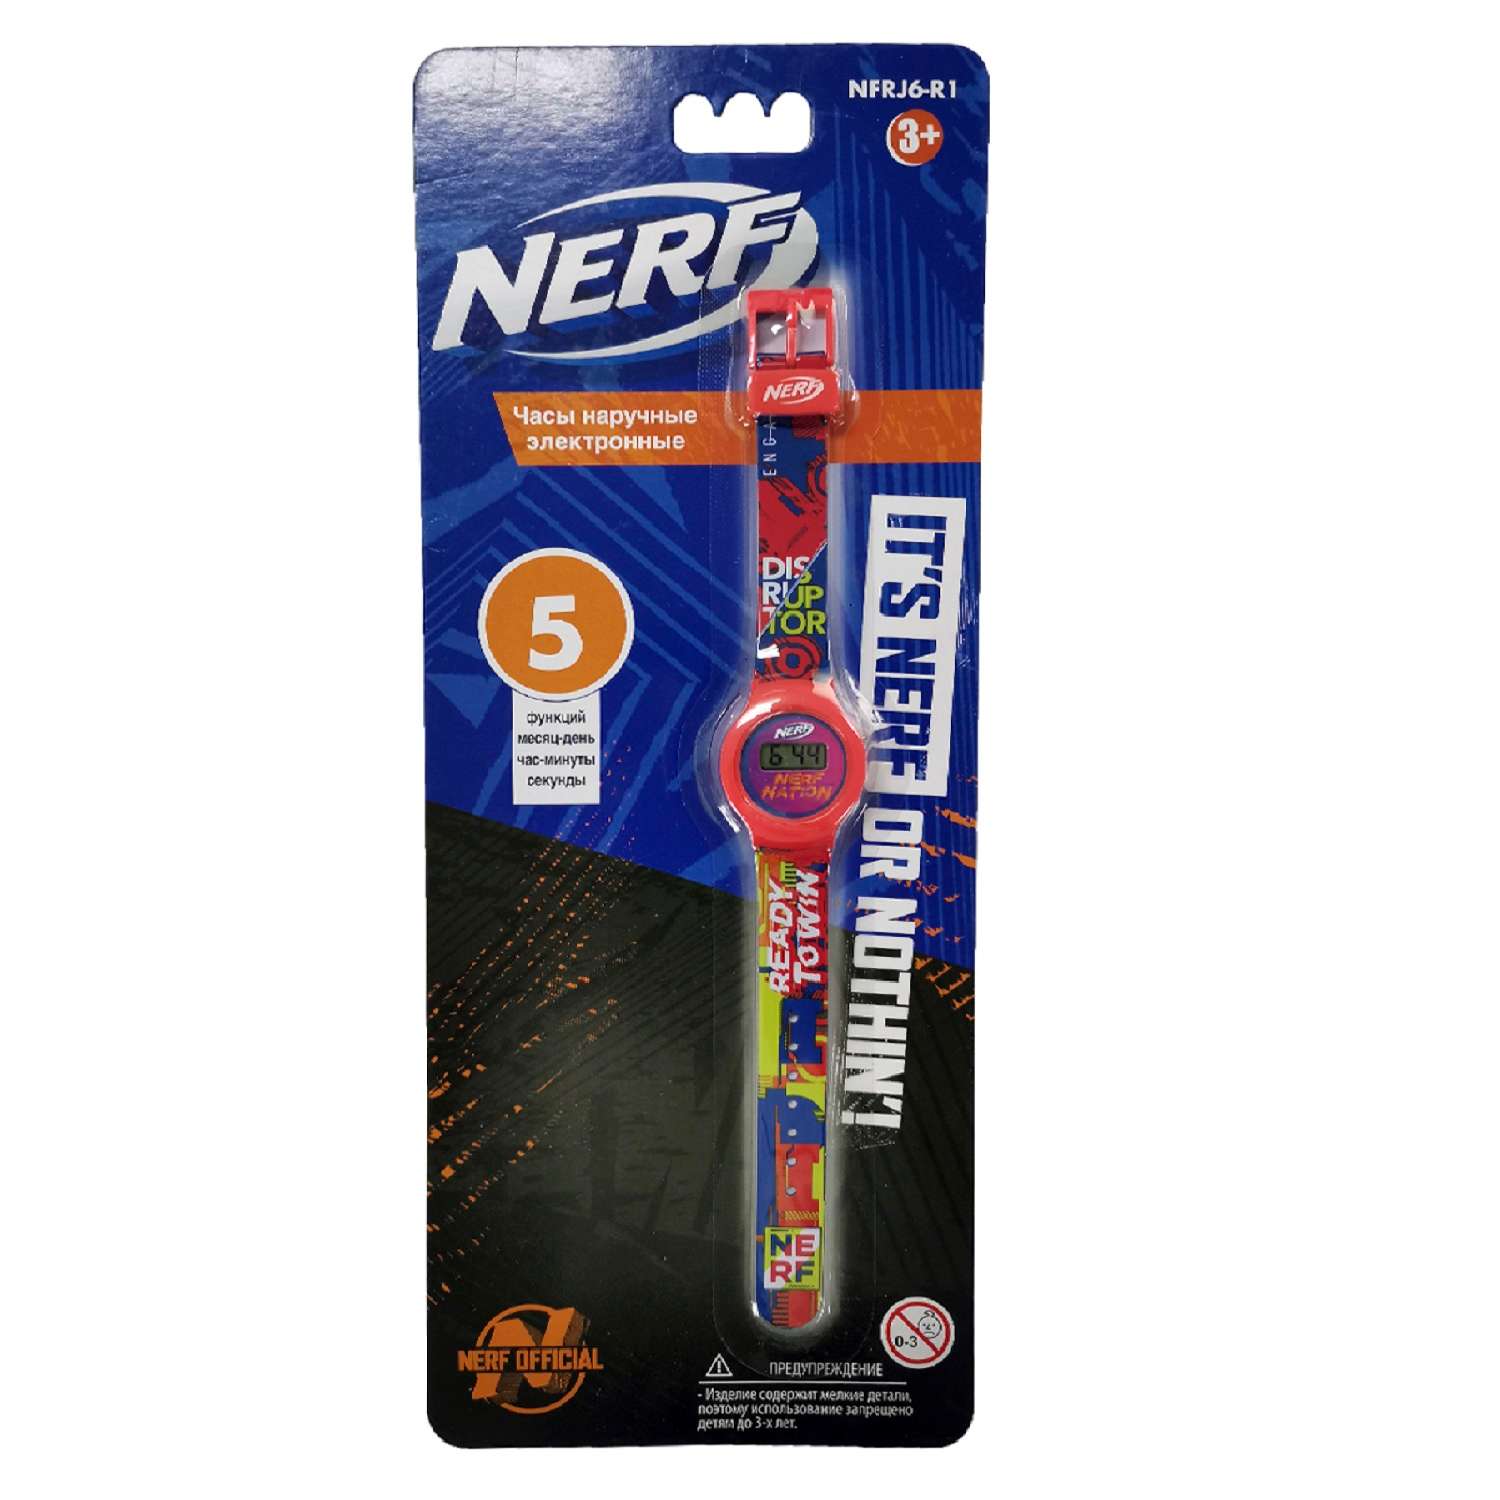 Часы наручные электронные Hasbro(Nerf) NFRJ6-R1 - фото 2